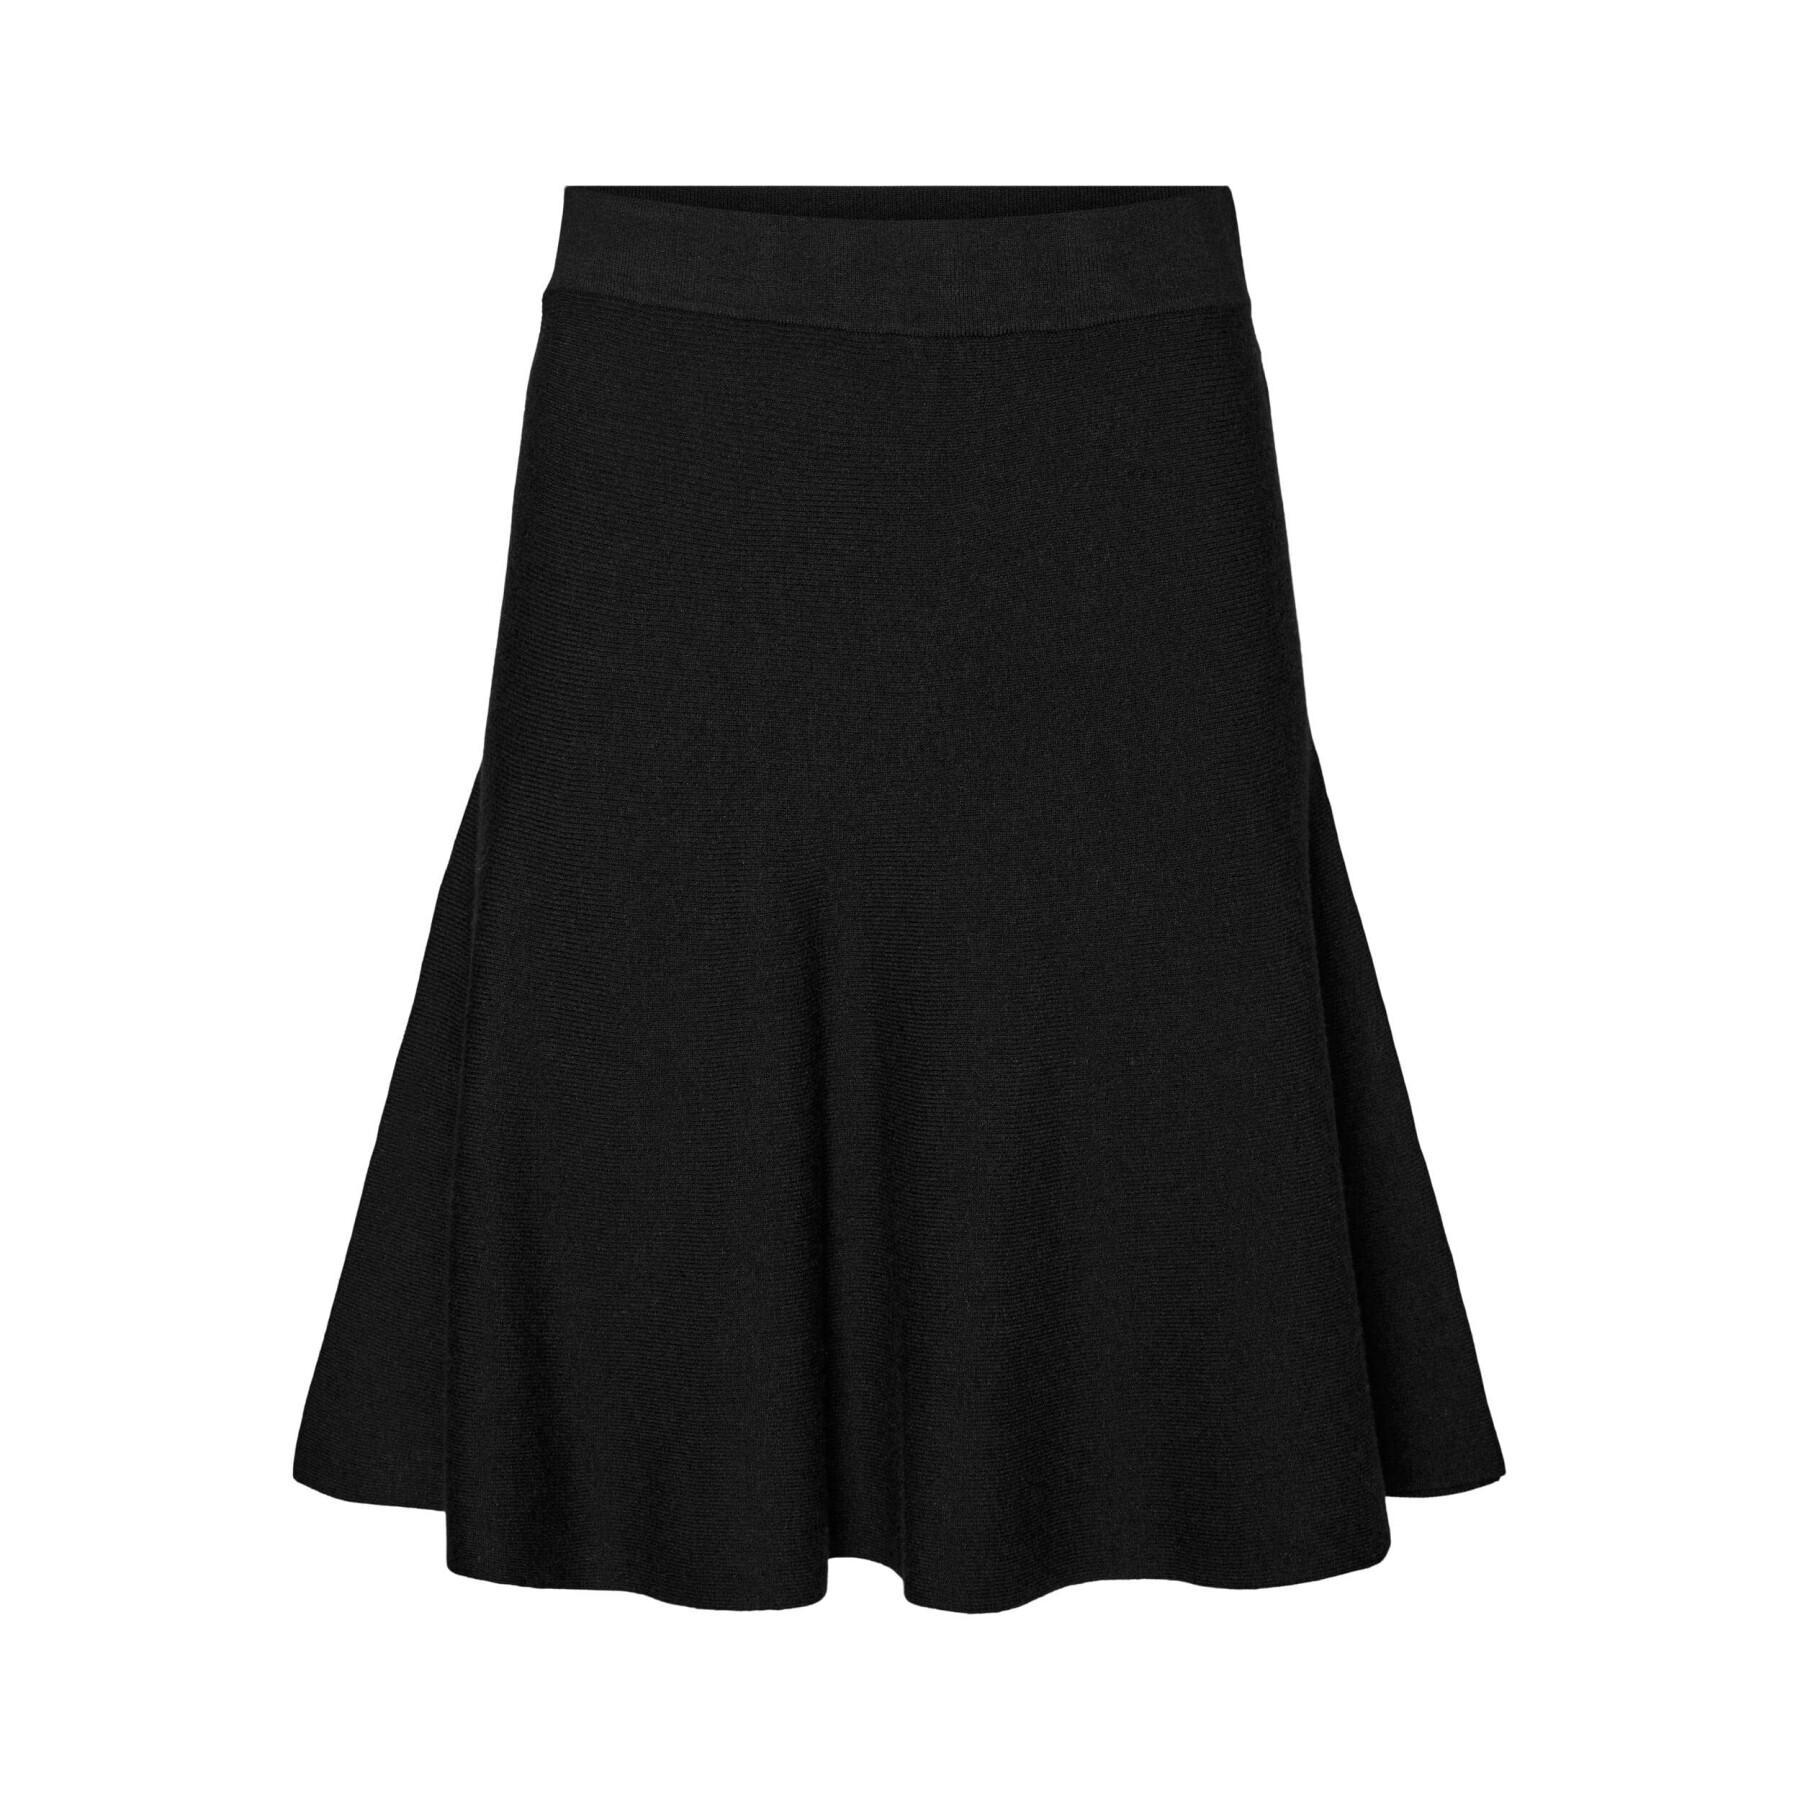 Short skirt for women Vero Moda Nancy